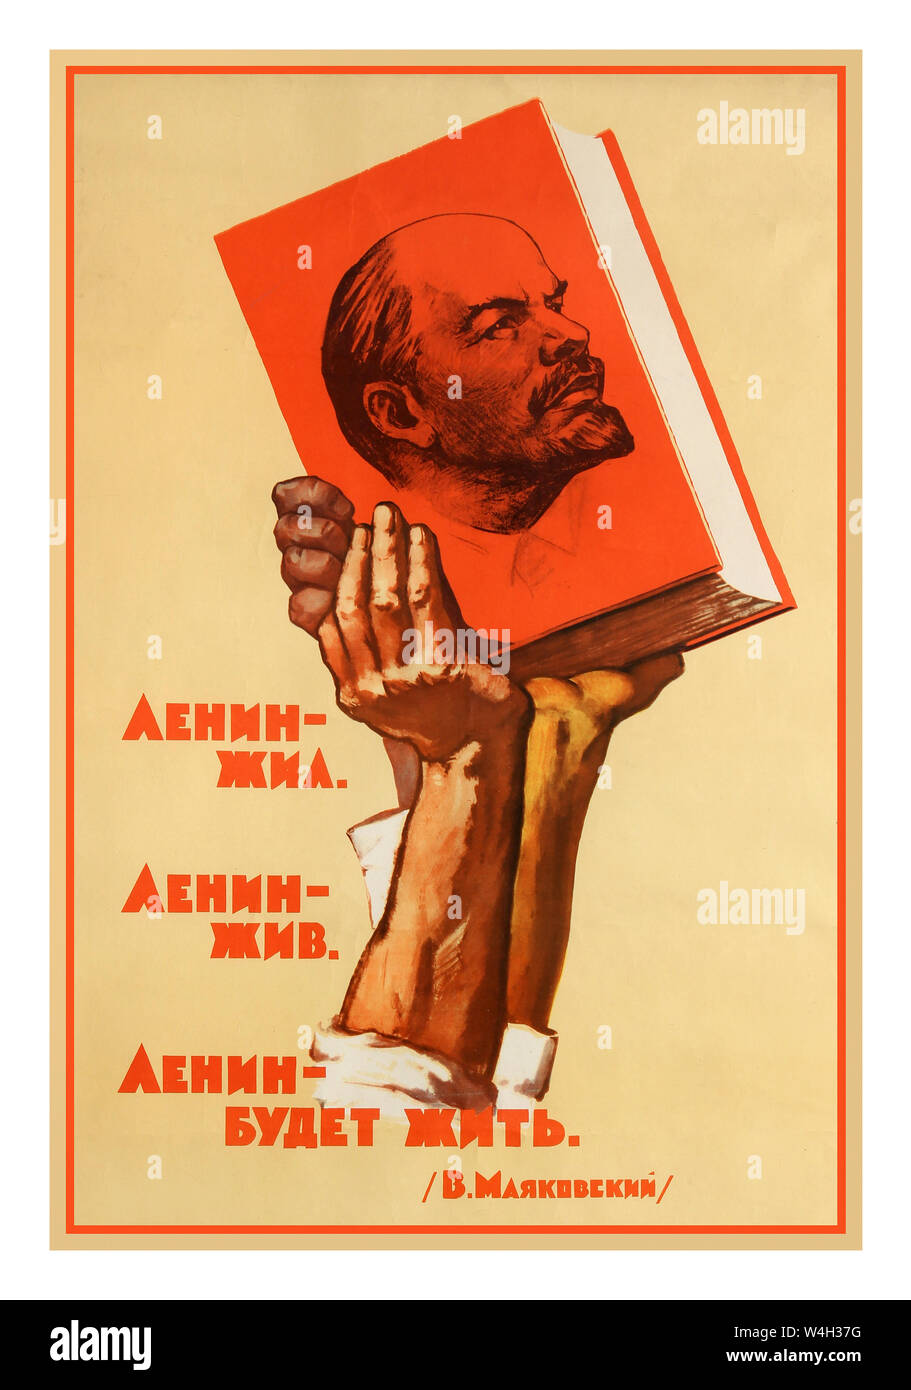 Der offiziellen sowjetischen Jahrgang 1957 Propaganda Poster: "Lenin, Lenin, Lenin wird Leben". Bild der starken Arme hoch oben ein rotes Buch mit einem Porträt von Lenin auf dem Cover vor einem gelben Hintergrund, mit dem Zitat von V. Majakowski auf der linken Seite des Bildes in stilisierten roten Buchstaben gedruckt. 1957, Russland, Designer: V. Vladimirov, Stockfoto